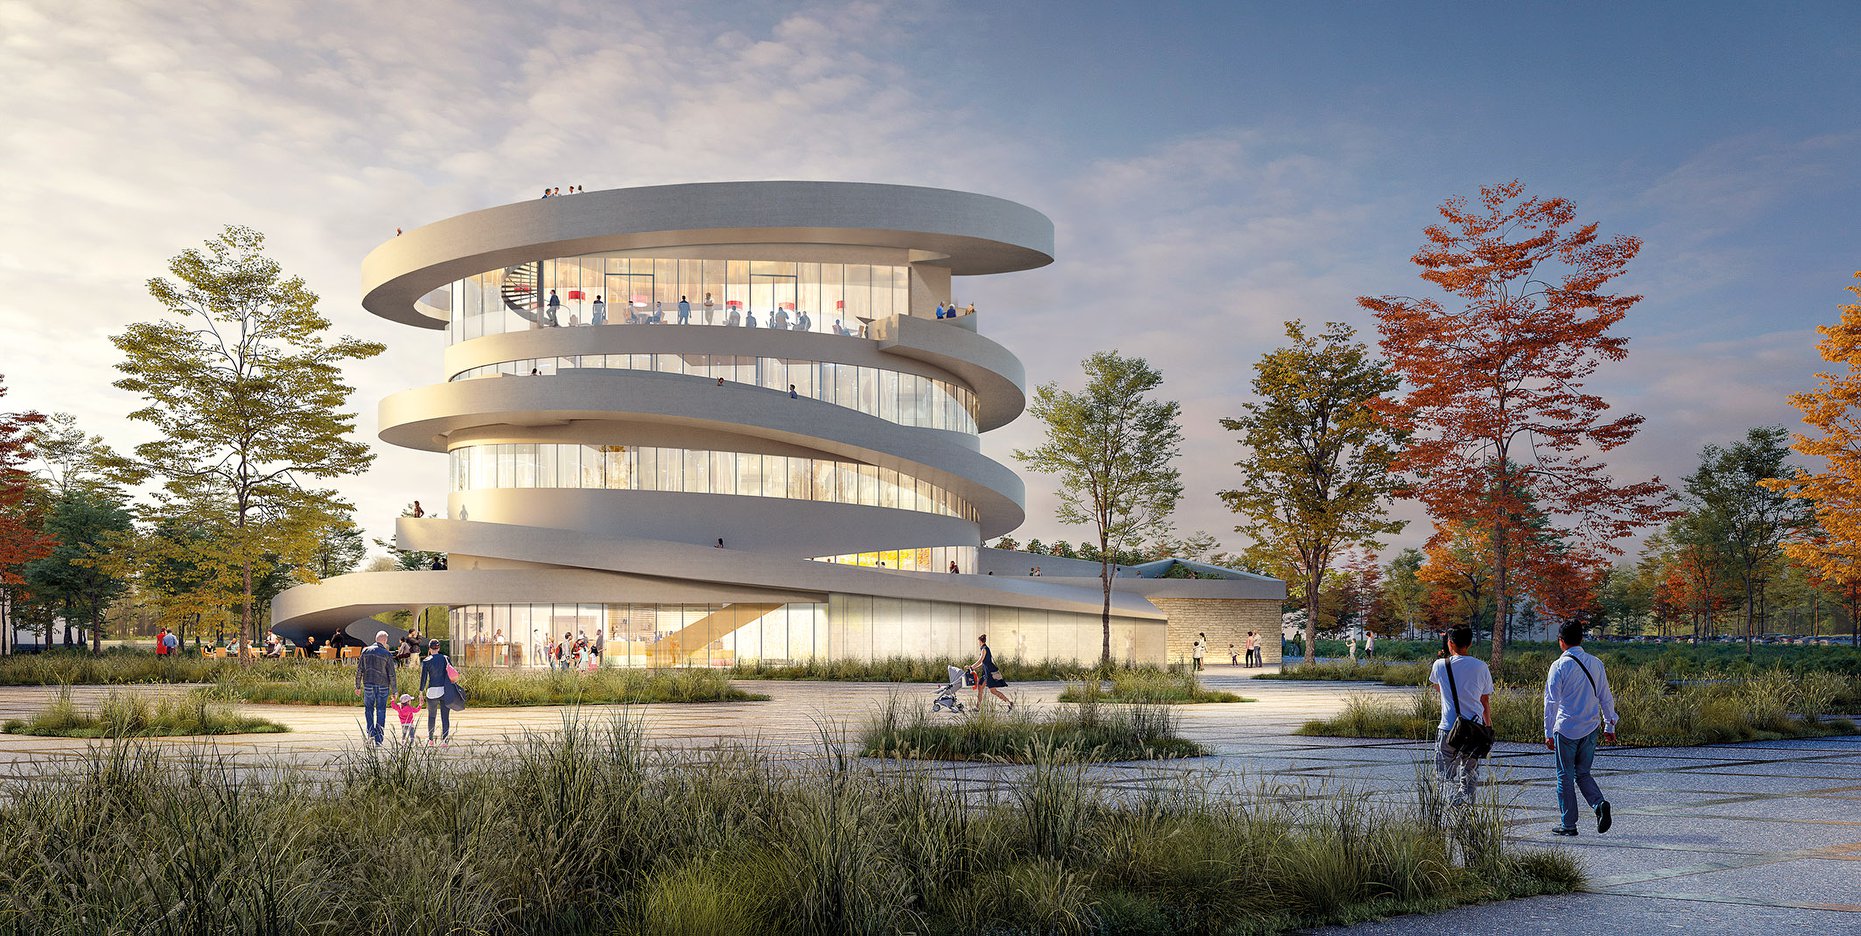 La forme du futur bâtiment est inspirée de la vrille de la vigne - Photo Région Bourgogne-Franche-Comté